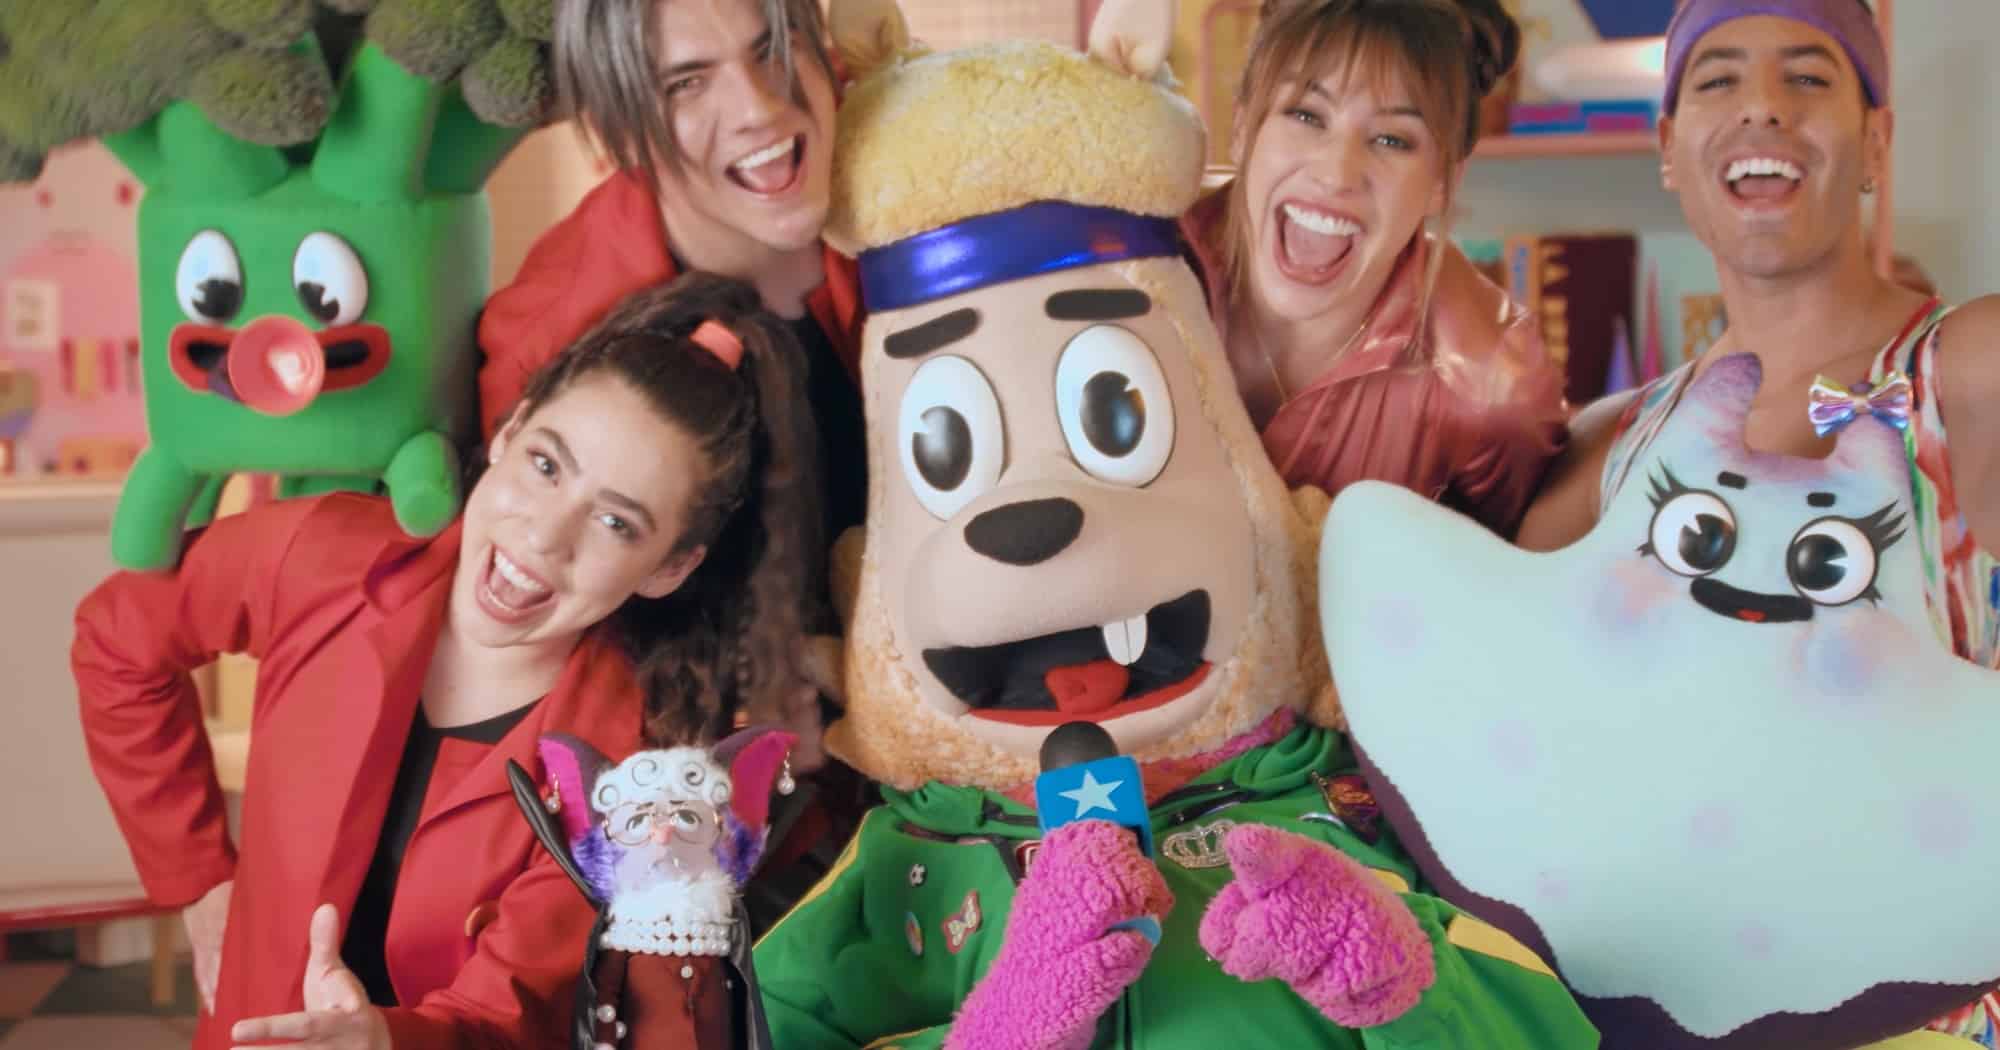 Televisa Digital lanza "Mones" emisión dirigida a la audiencia infantil